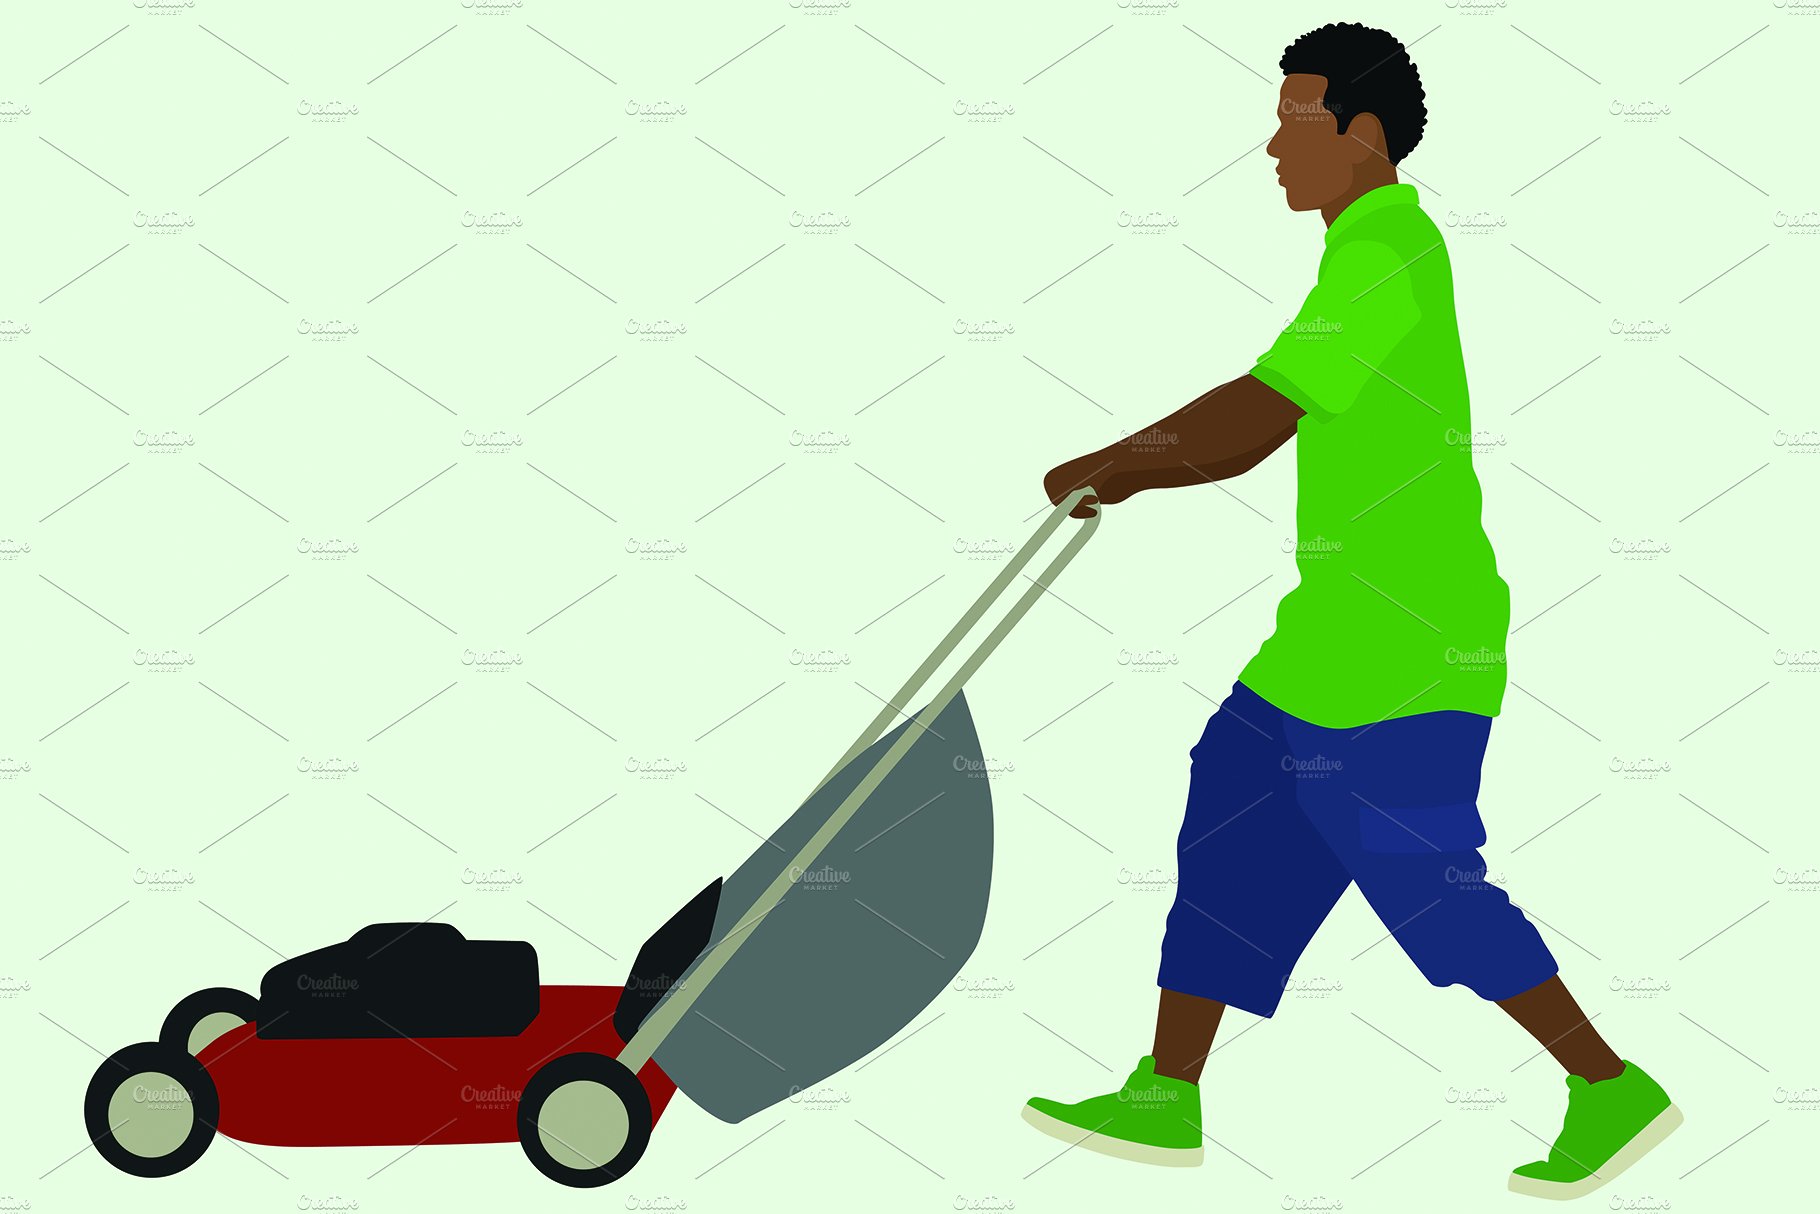 Black Man Pushing Lawnmower cover image.